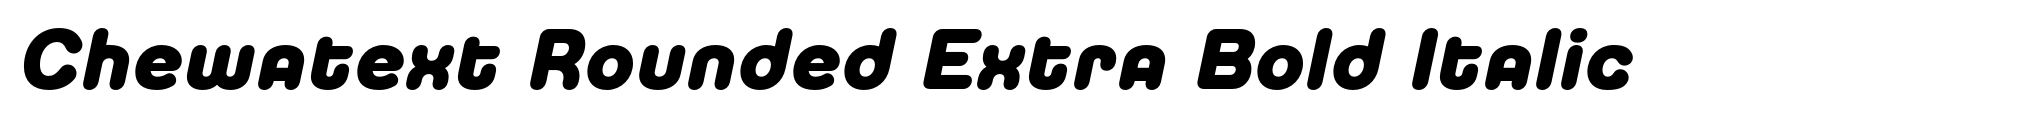 Chewatext Rounded Extra Bold Italic image